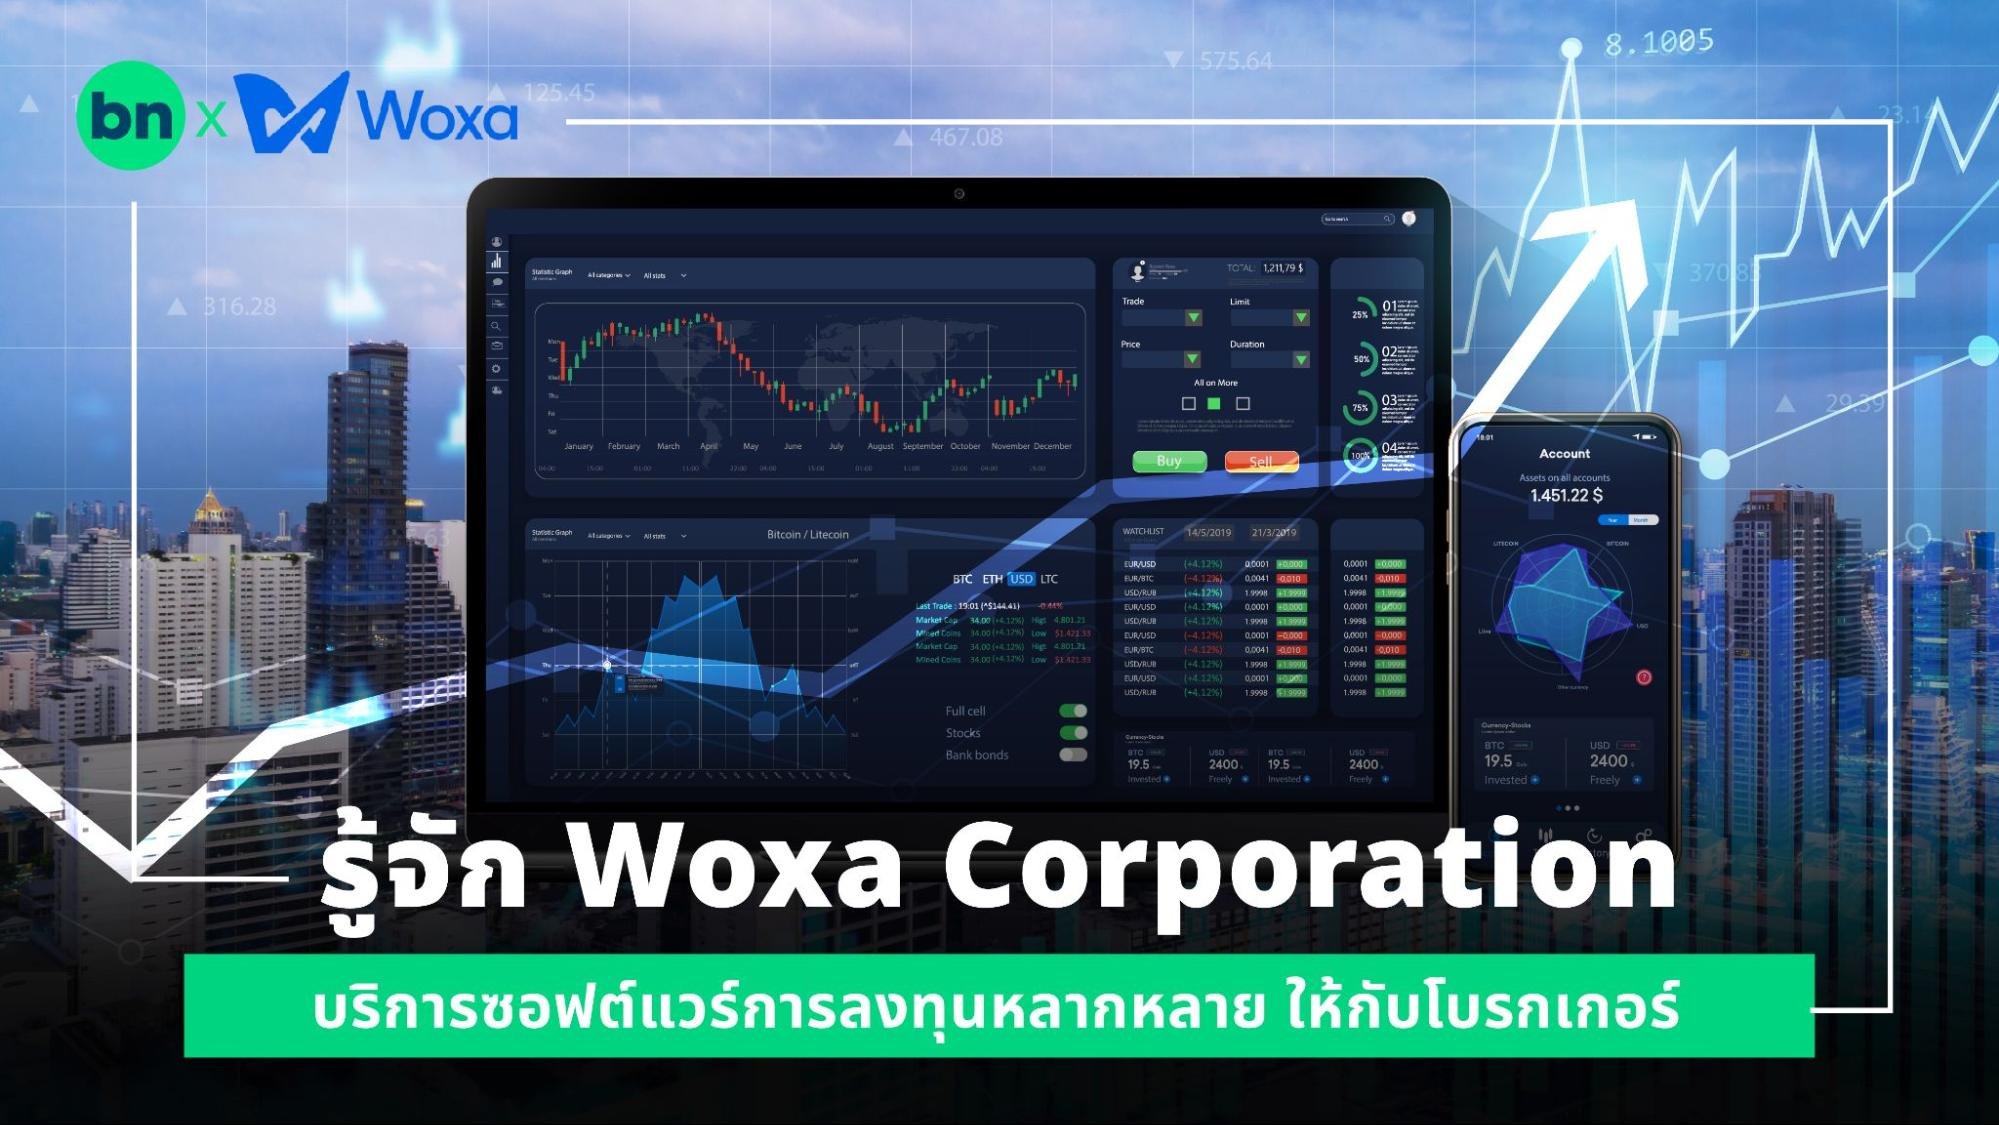 alt="Woxa Corporation"